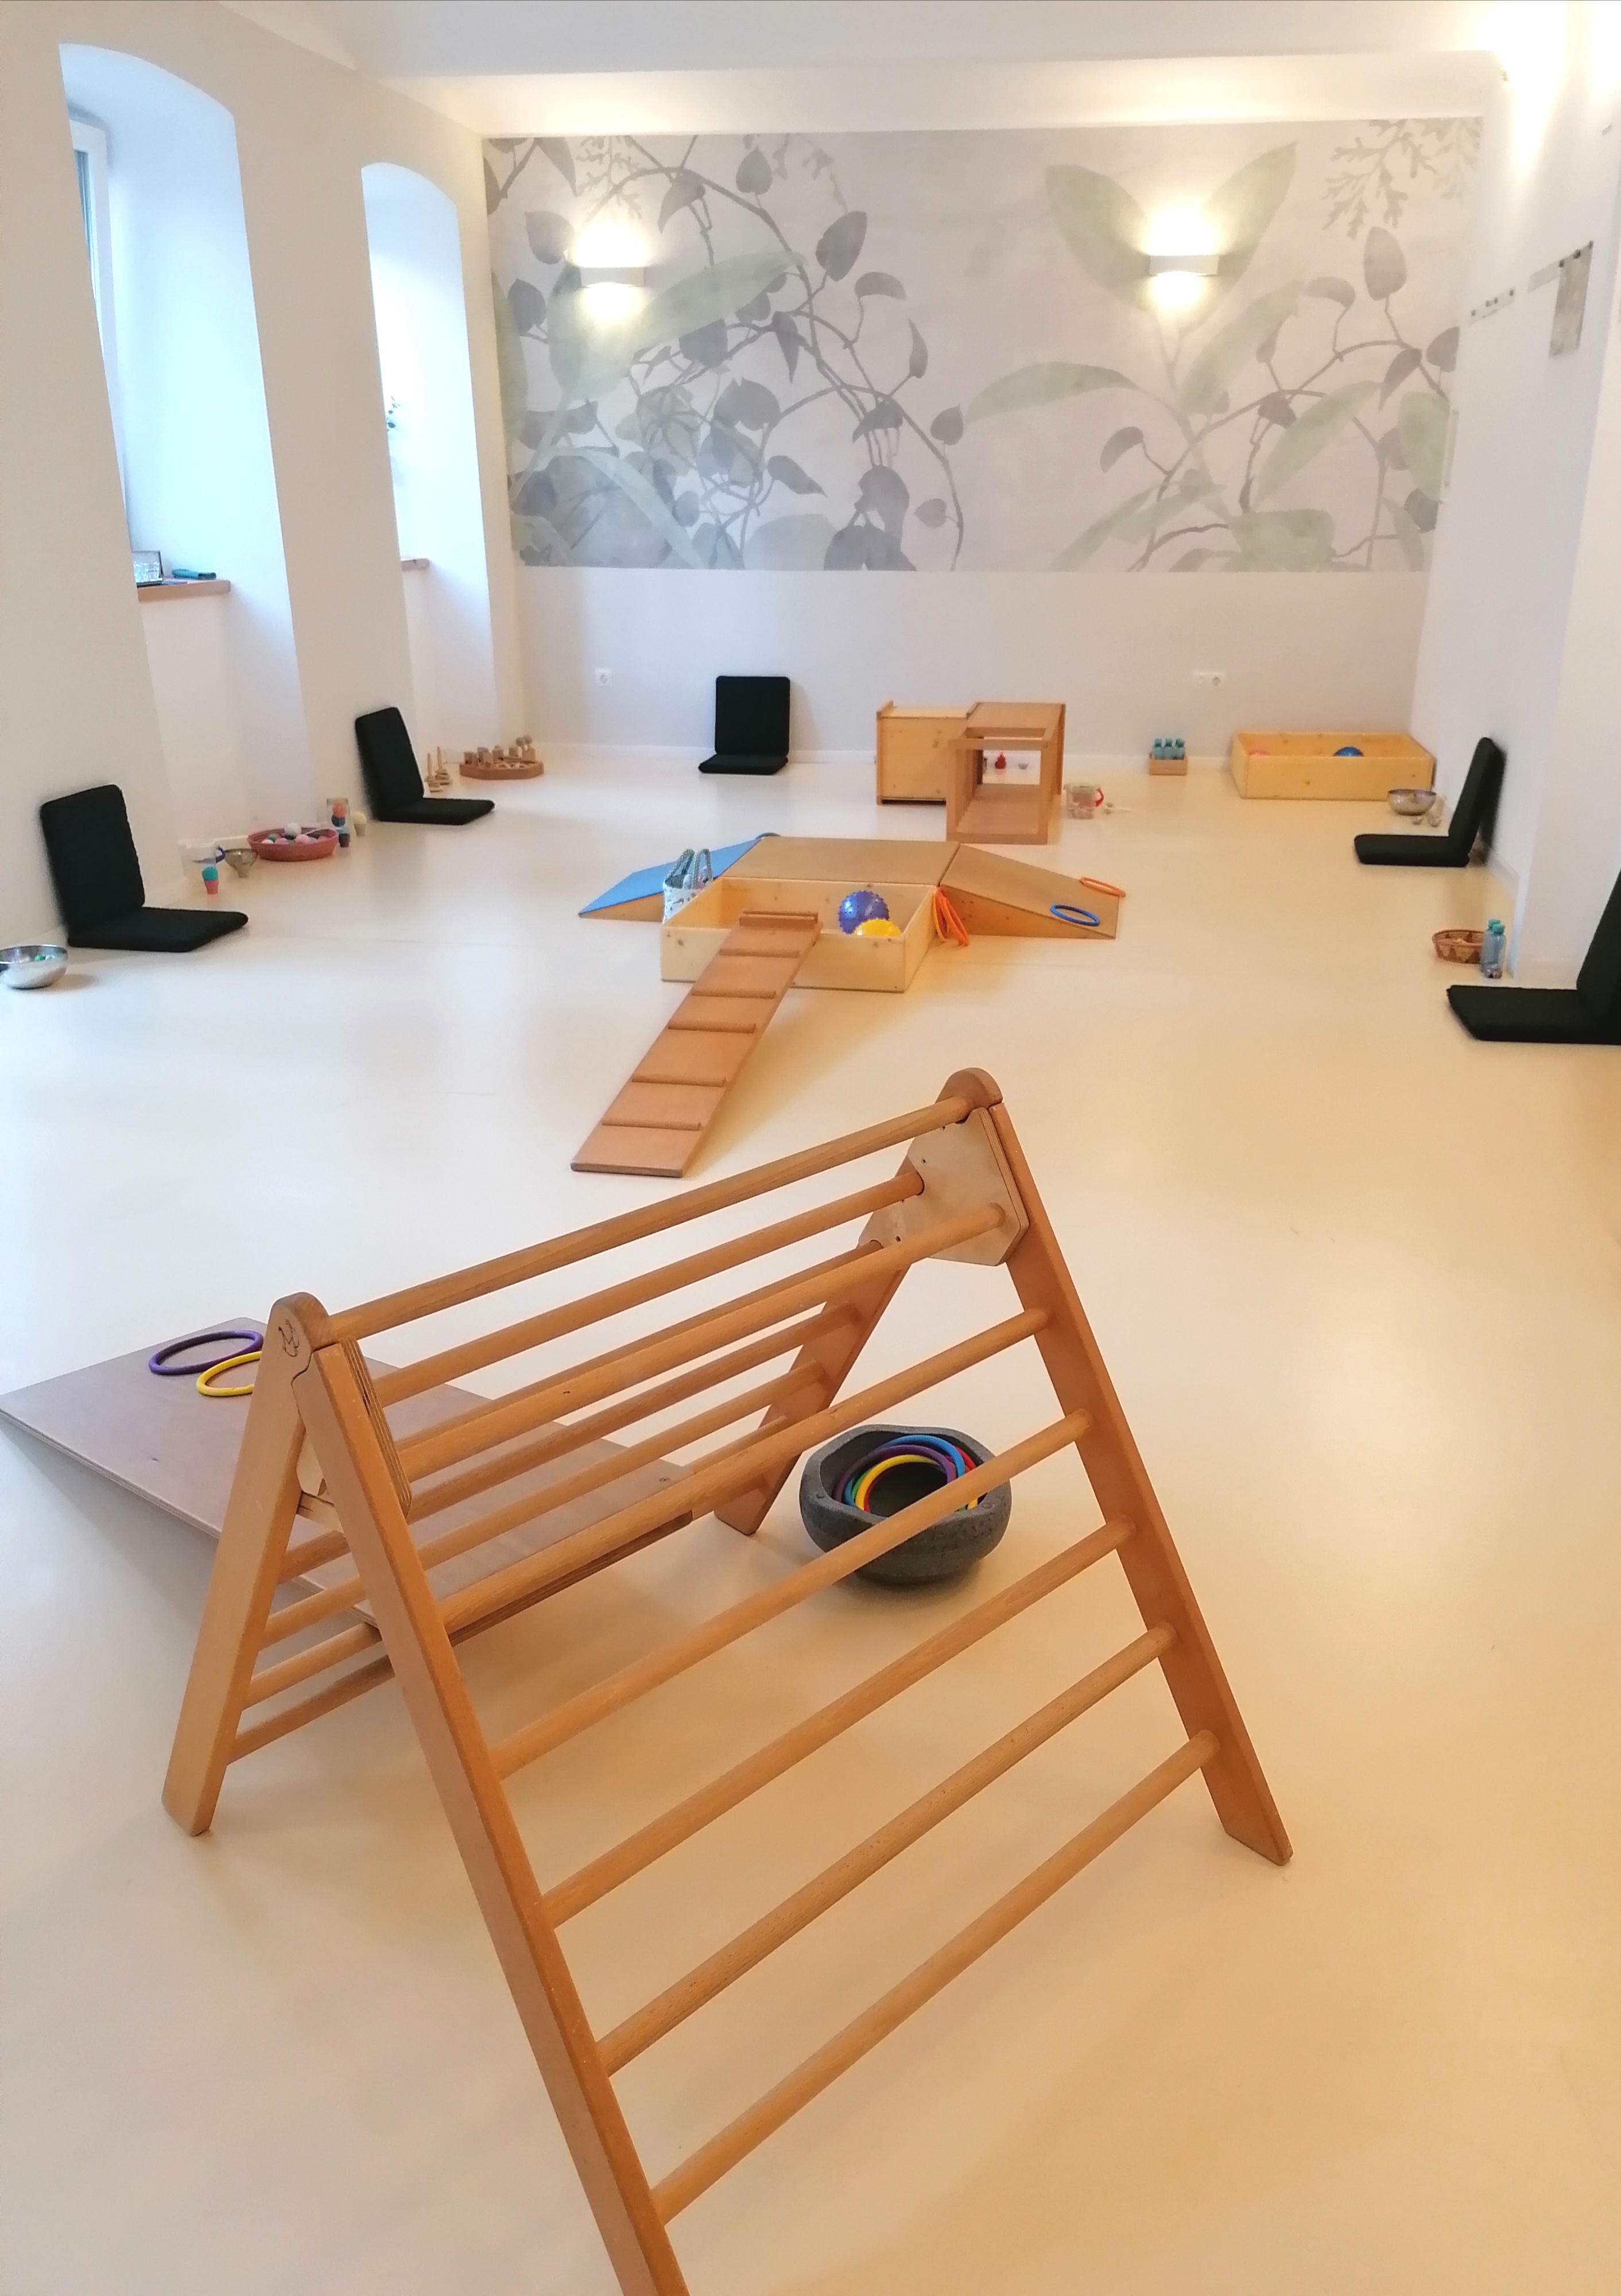 das Spielraum Atelier mit den typischen Klettergeräten aus Holz, hergestellt vom Spielzeugmacher Plackner, entwickelt von Emmi Pikler und ihrem Team